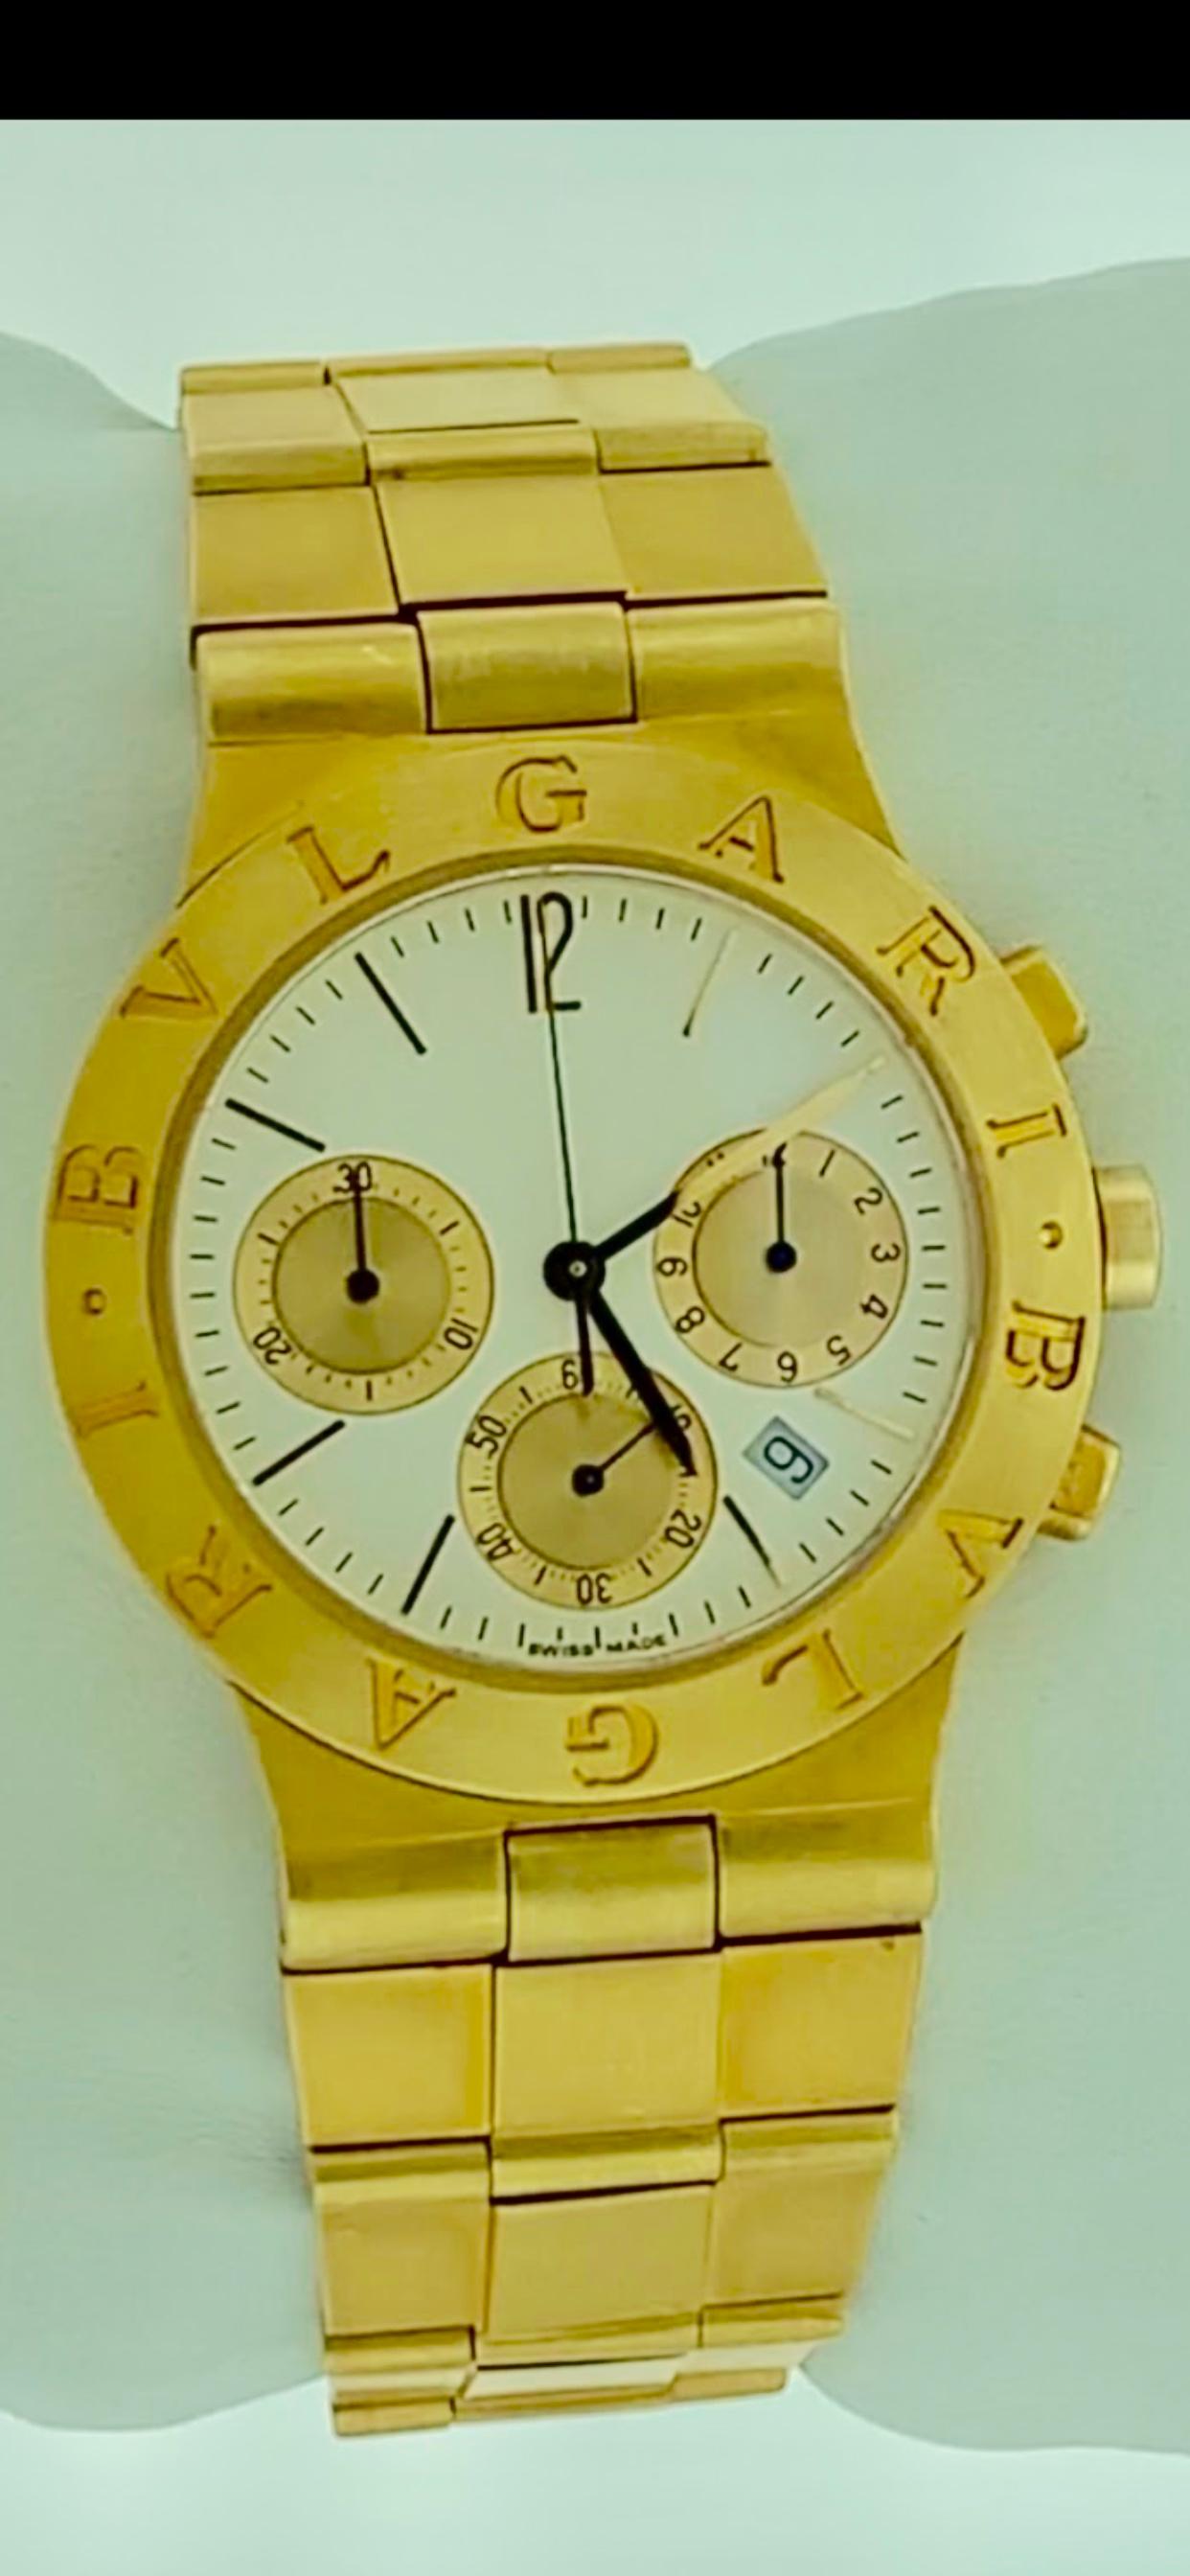 165 Gm 18 Karat Yellow Gold Bvlgari Chrono Watch Unisex Bvlgari Logo Watch 2